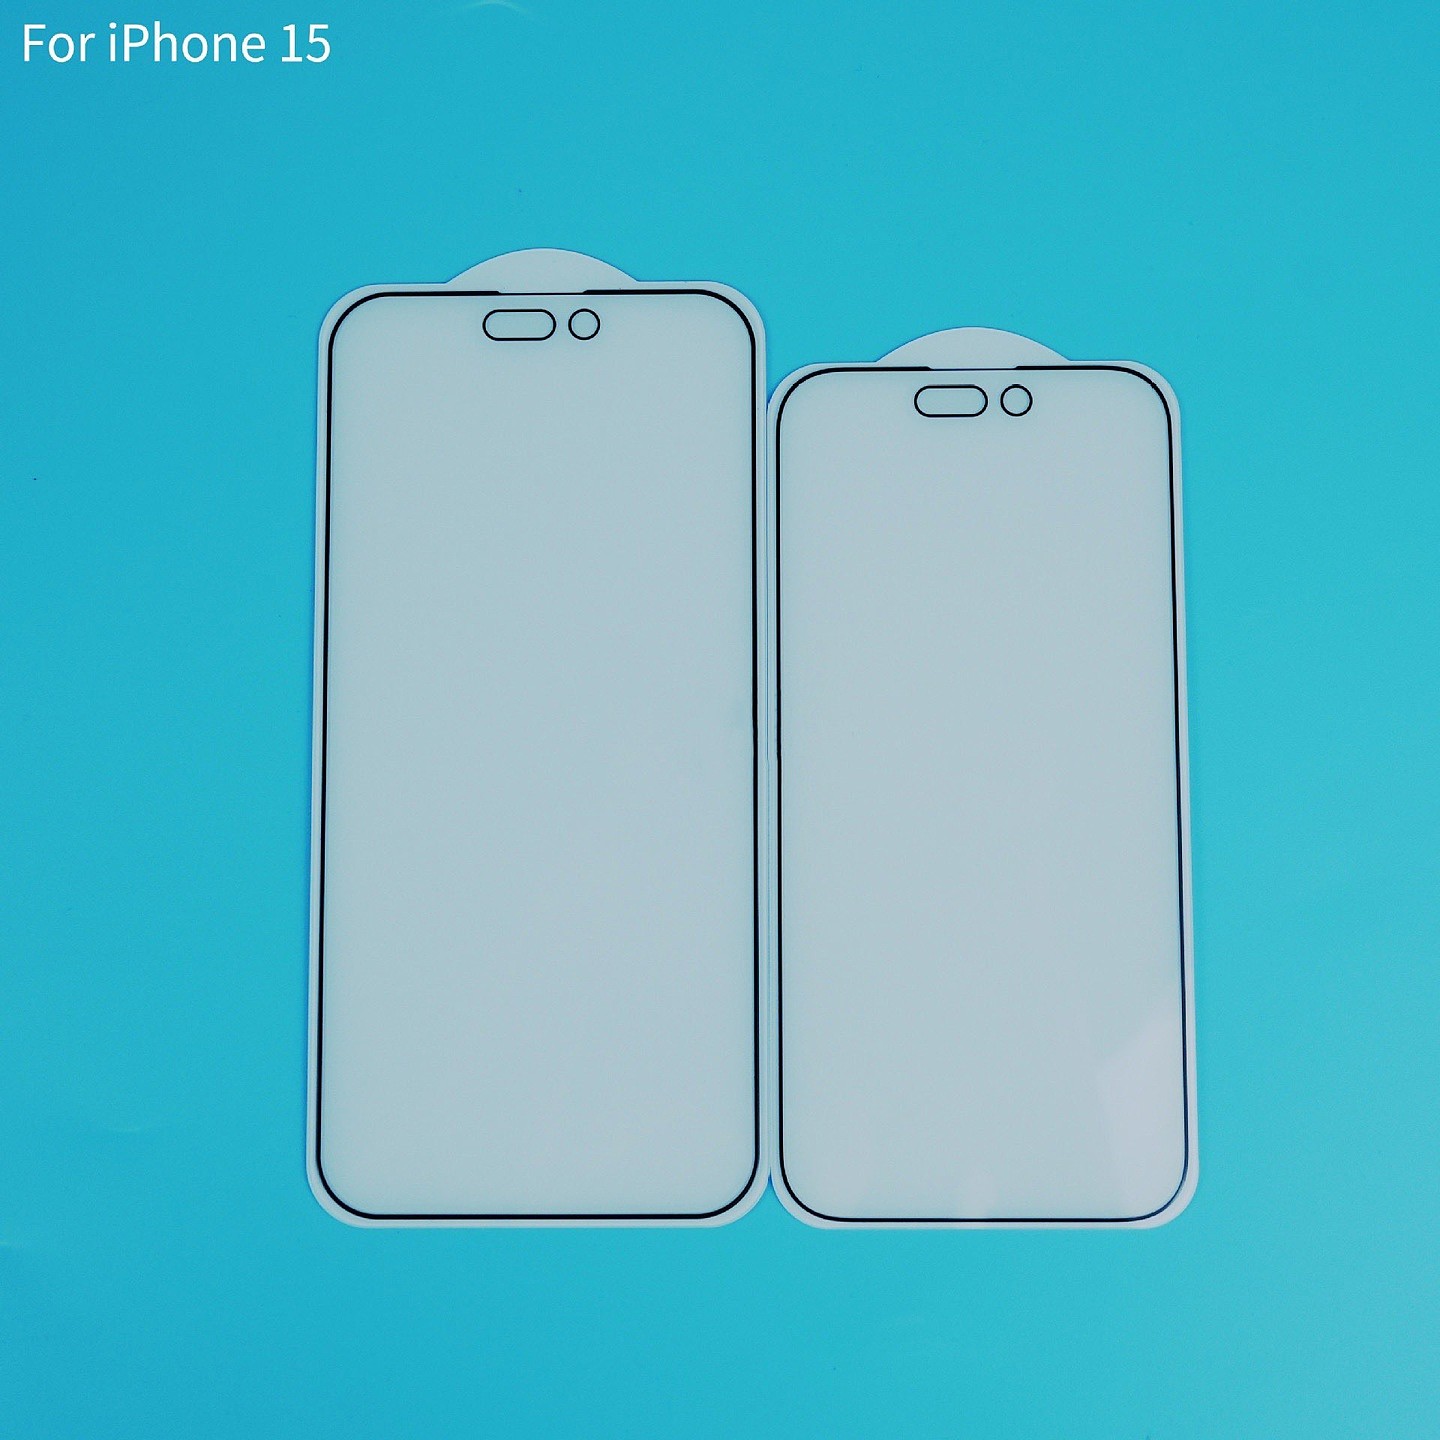 苹果 iPhone 15 系列钢化膜照片曝光 - 2